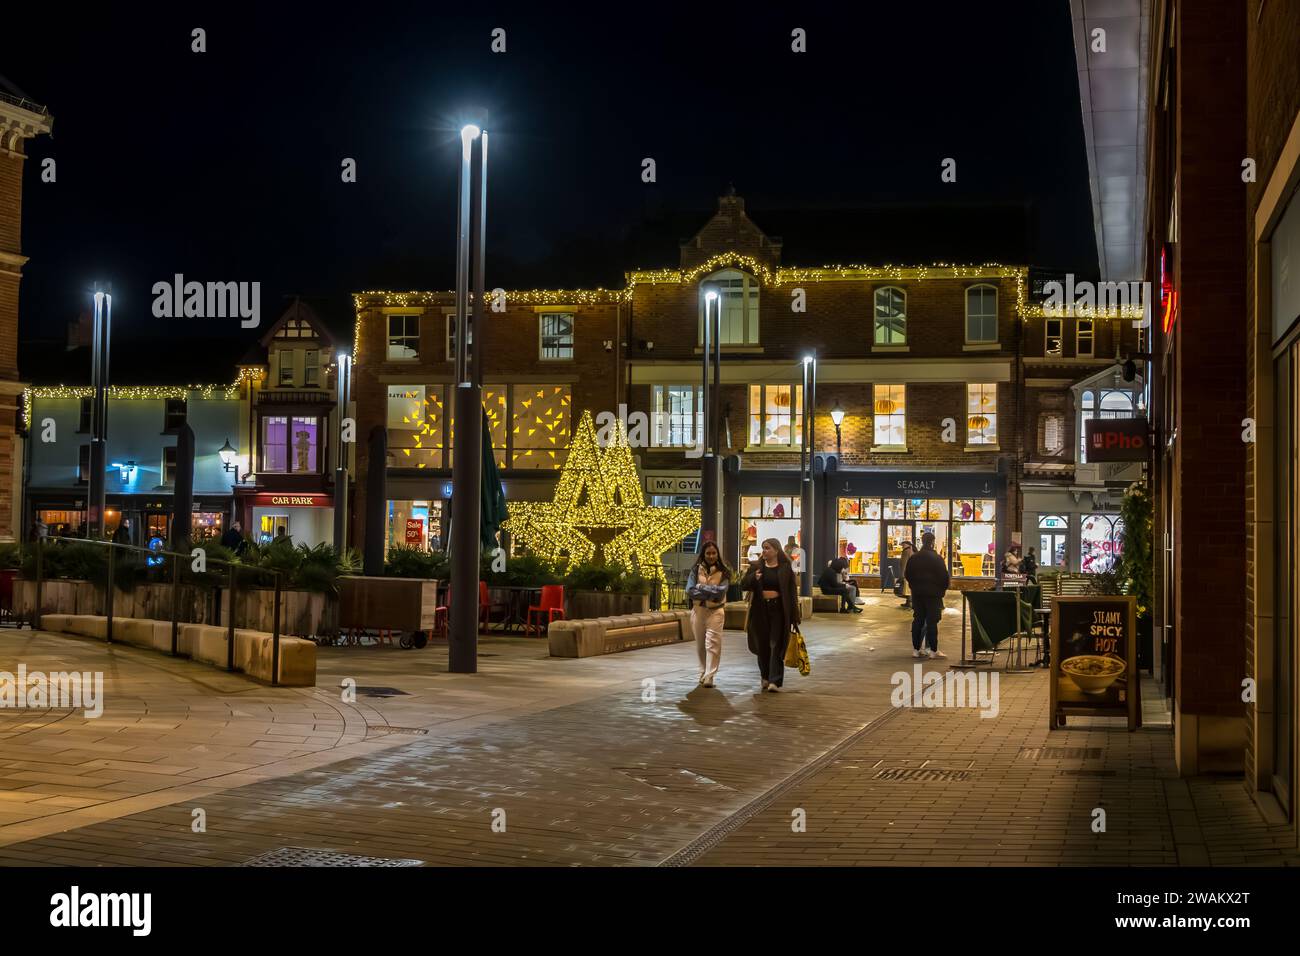 Vue des boutiques de Sincil Street depuis Cornhill, Lincoln City, Lincolnshire, Angleterre, Royaume-Uni Banque D'Images